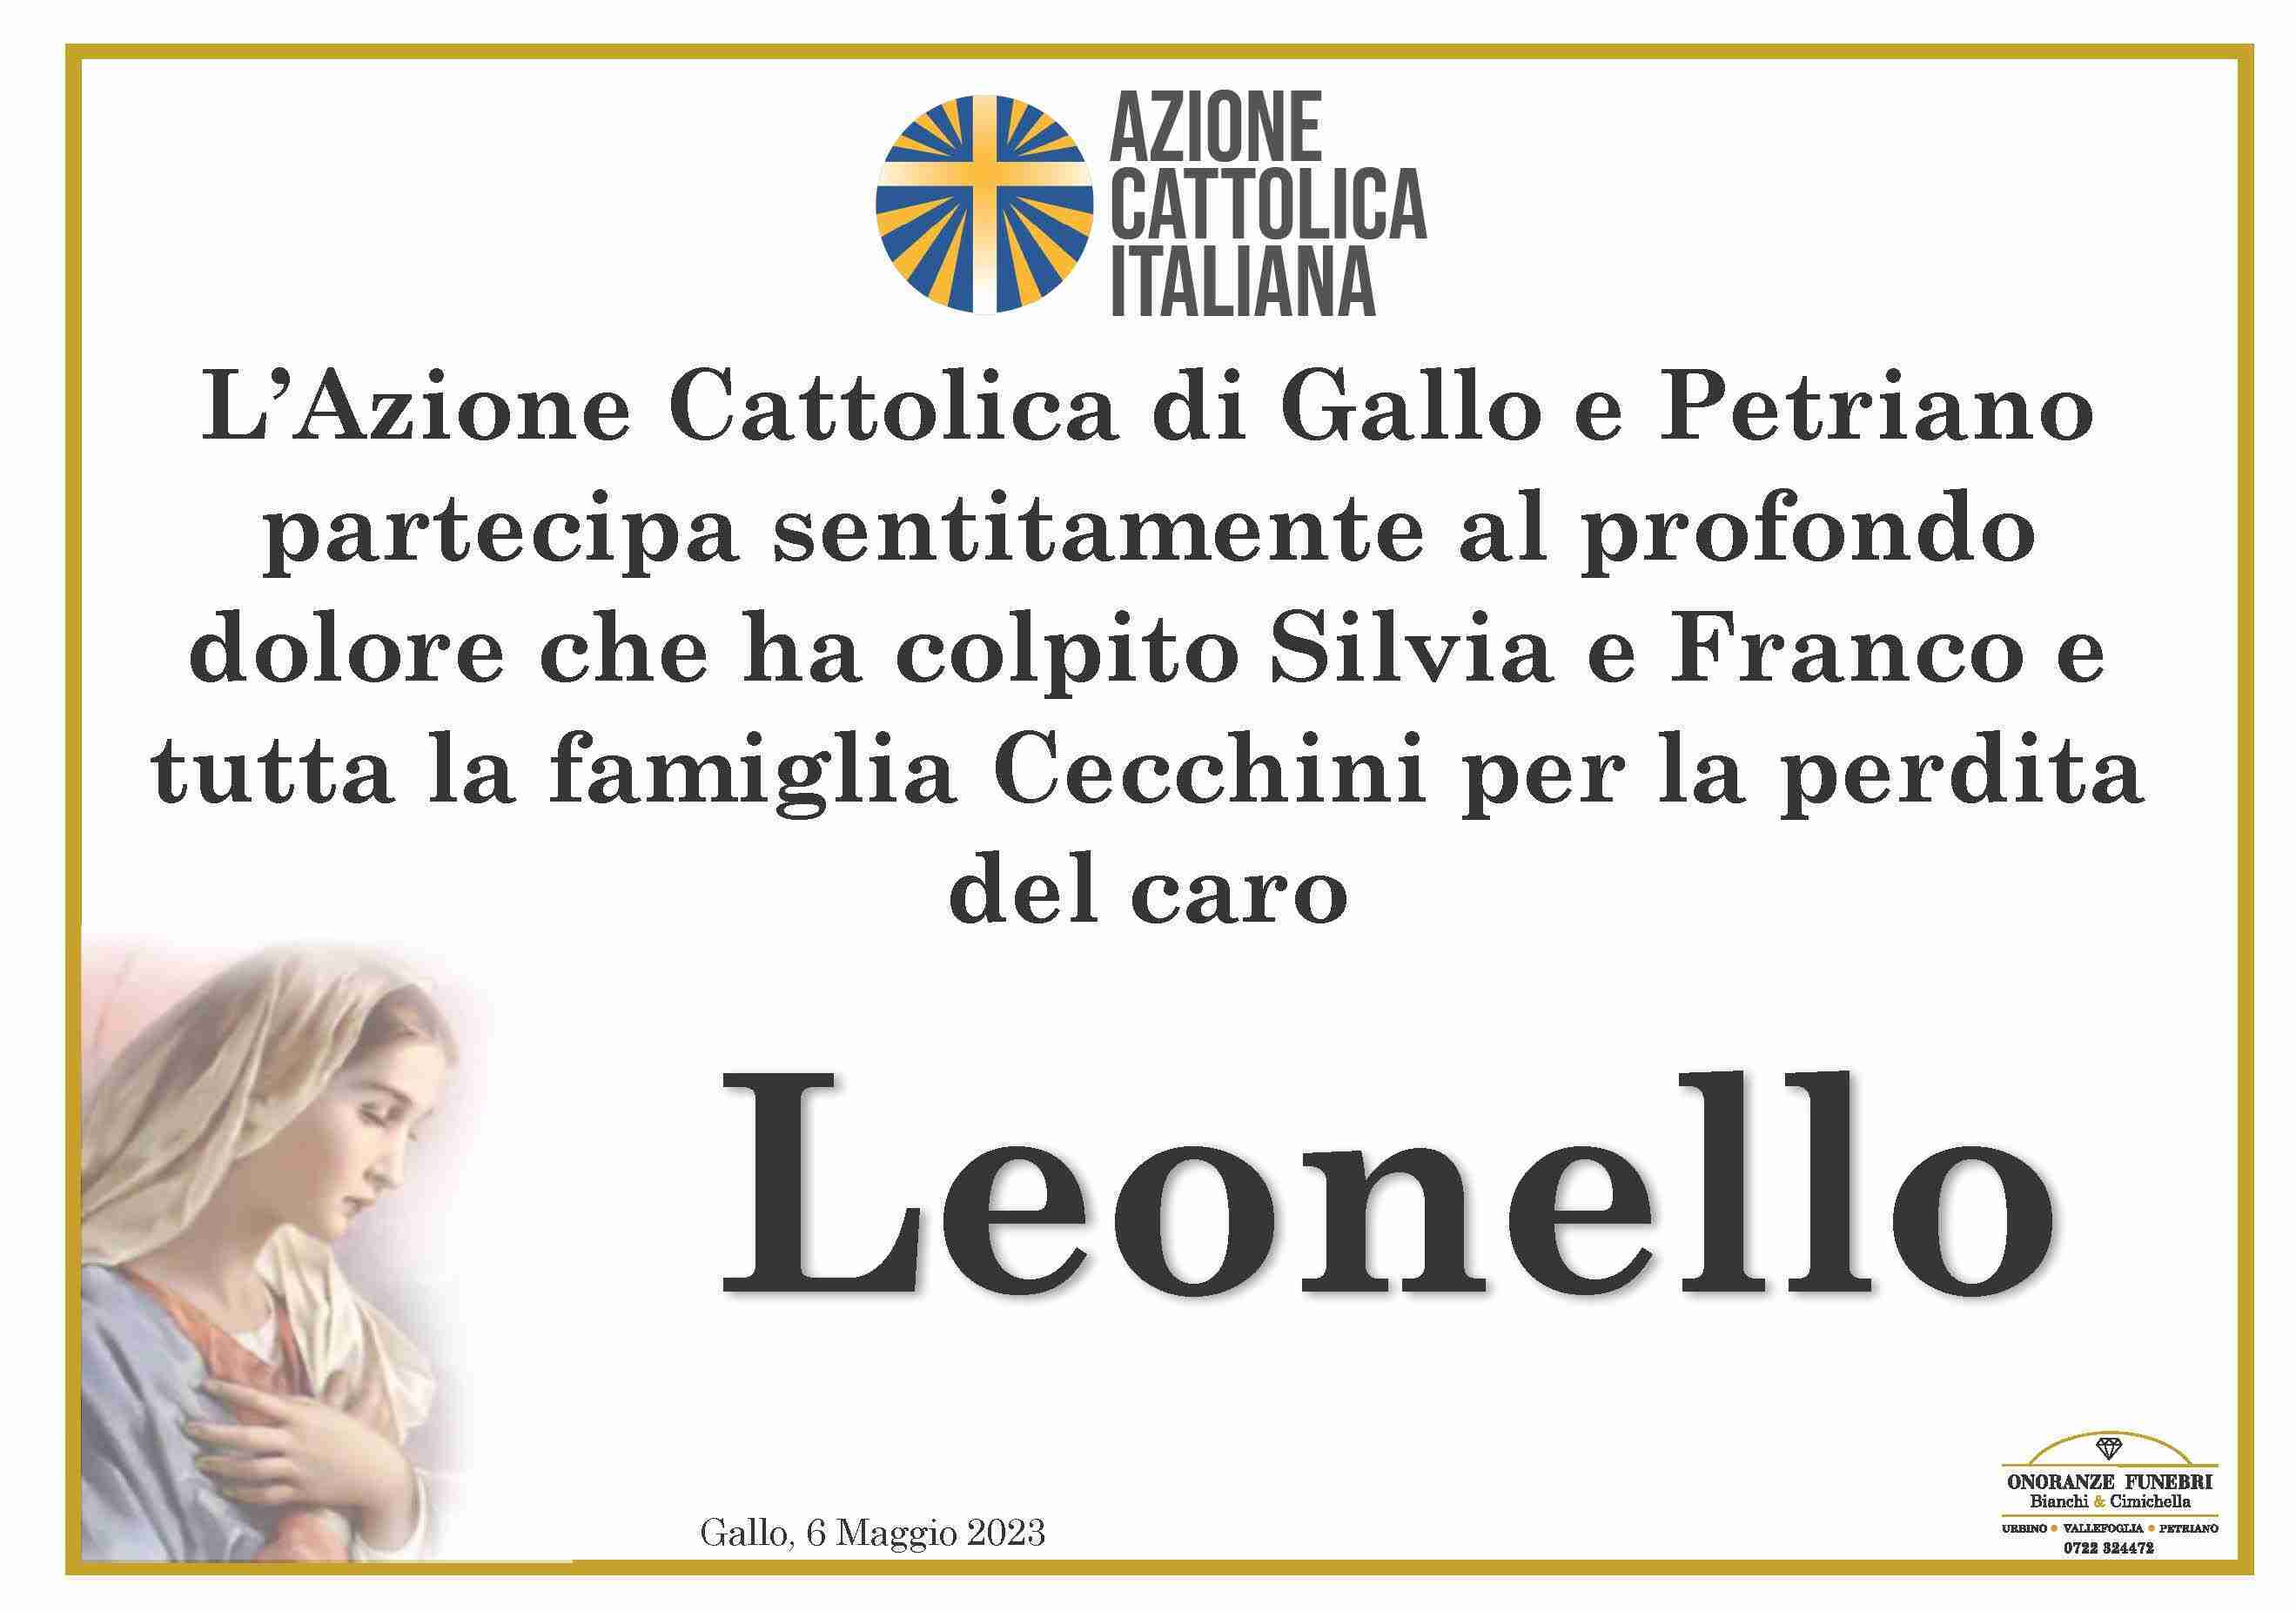 Leonello Cecchini